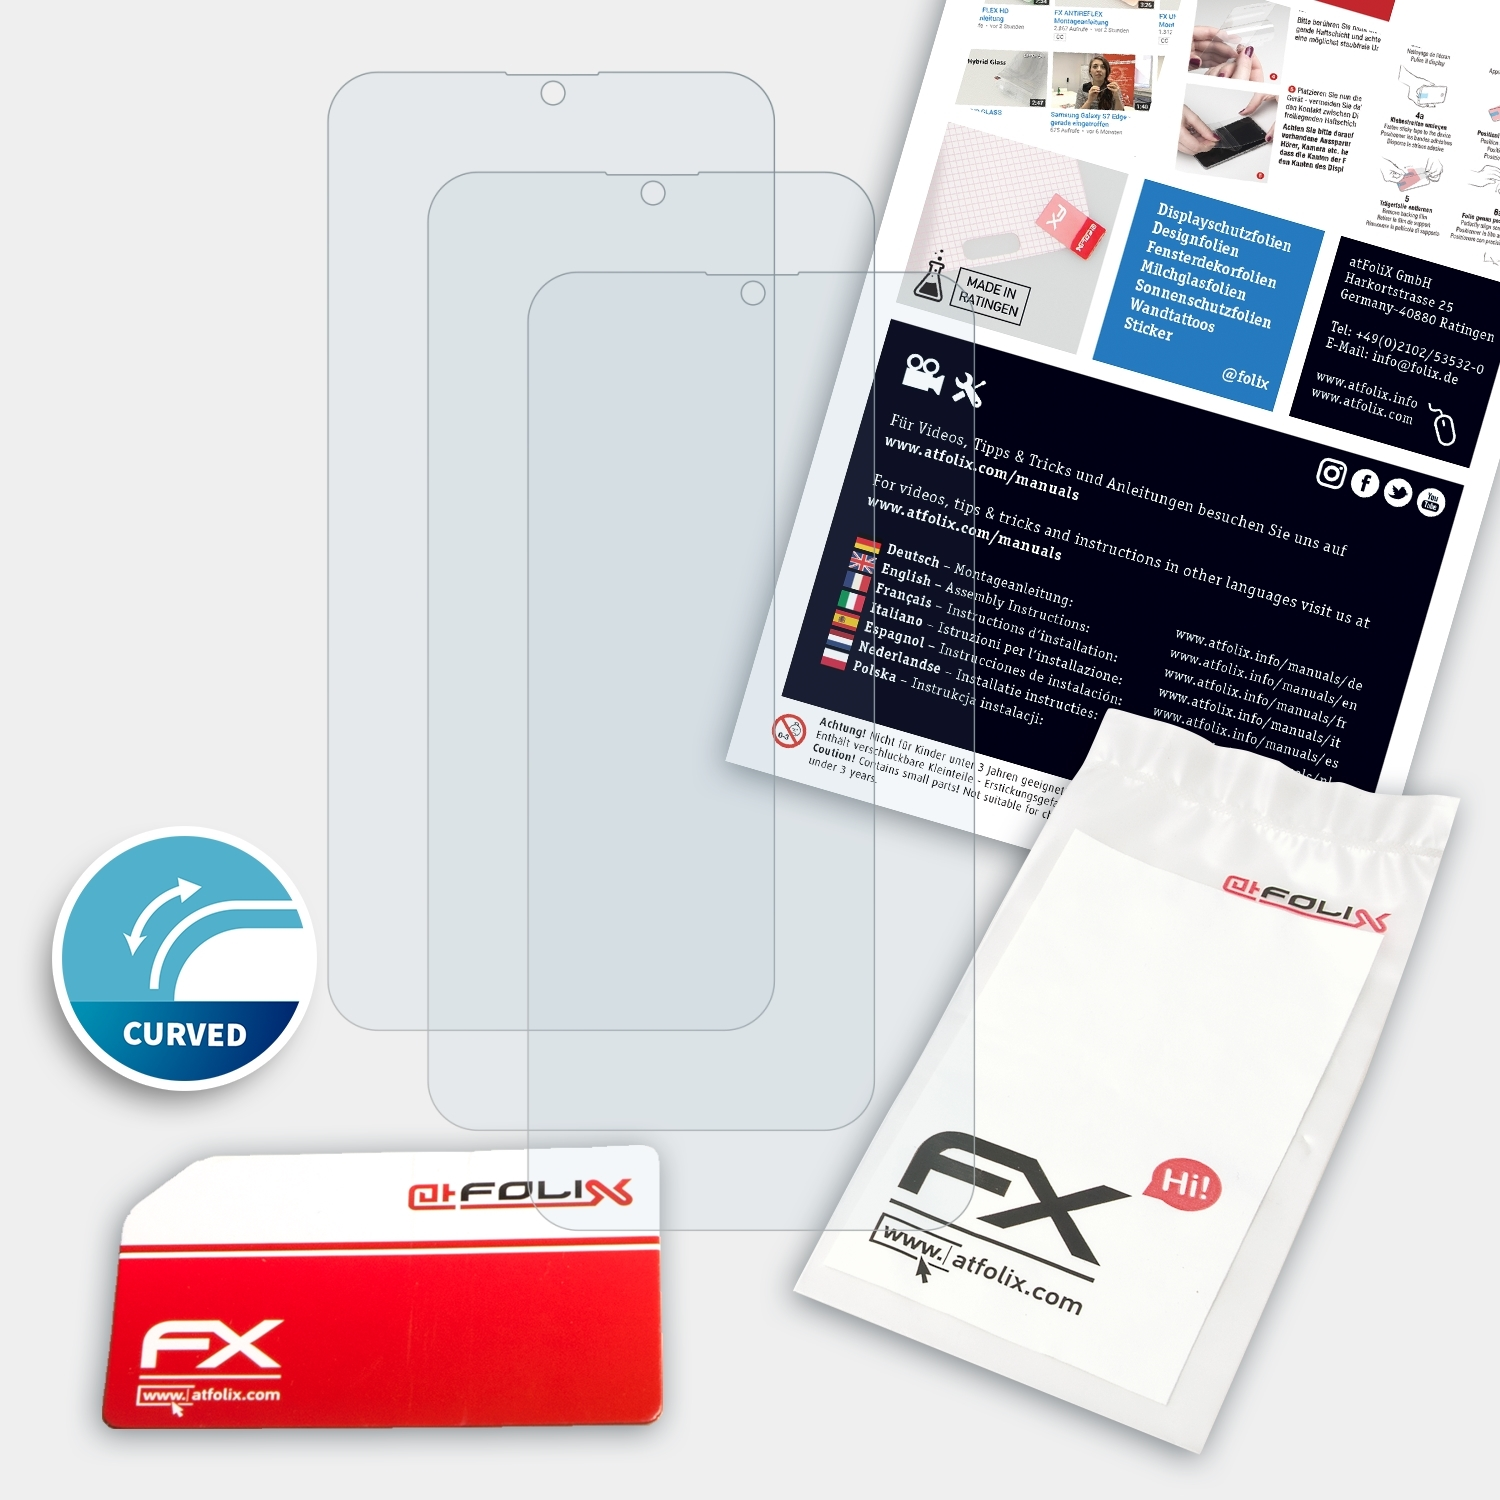 ATFOLIX 3x FX-ActiFleX 6T) OnePlus Displayschutz(für